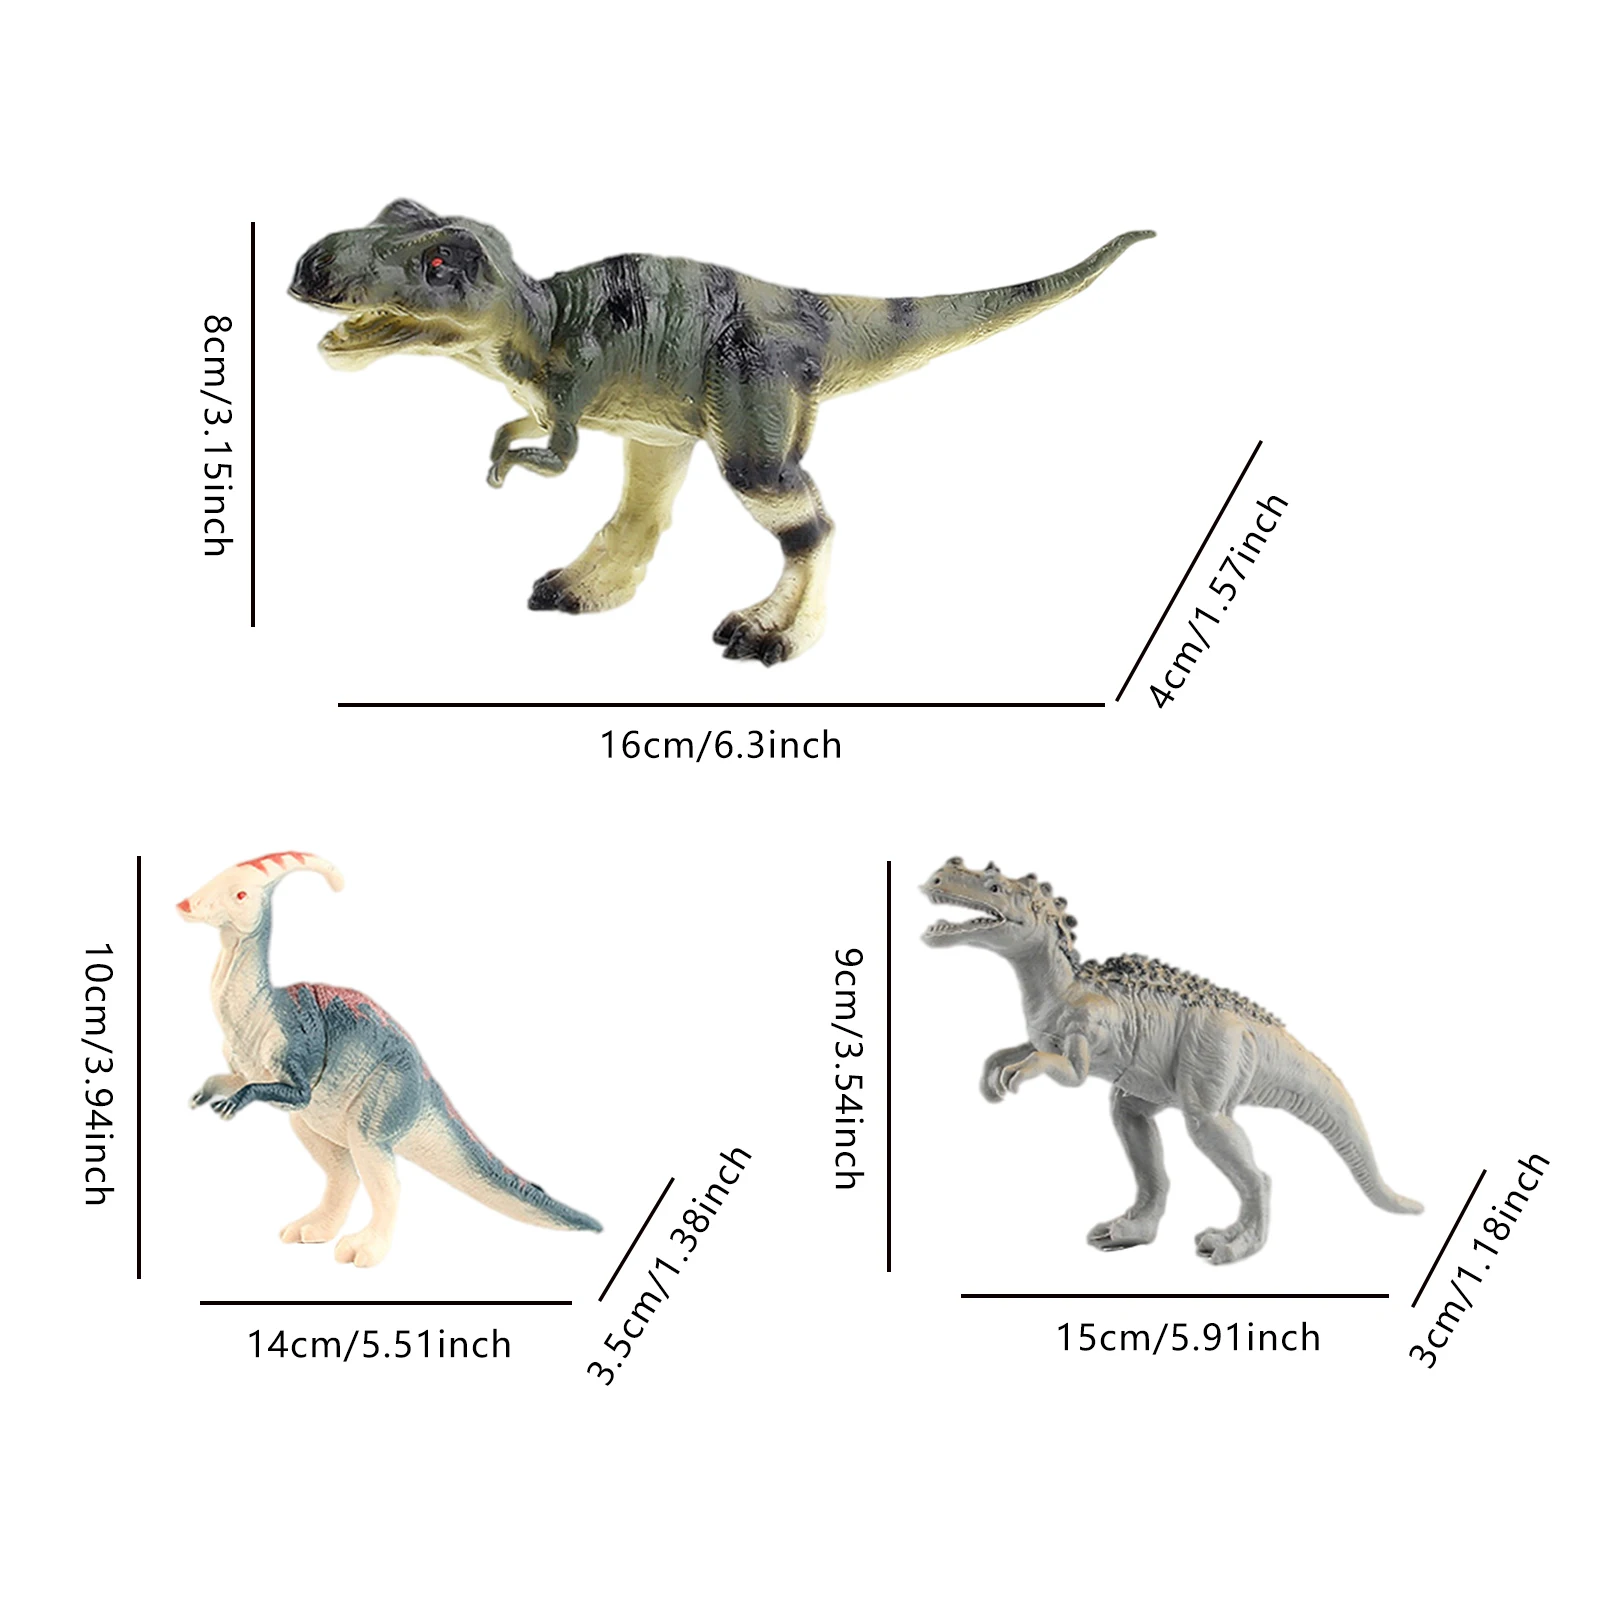 Фигурки-Модели Динозавров Юрского периода Оригинальные фигурки из Т-Рекс